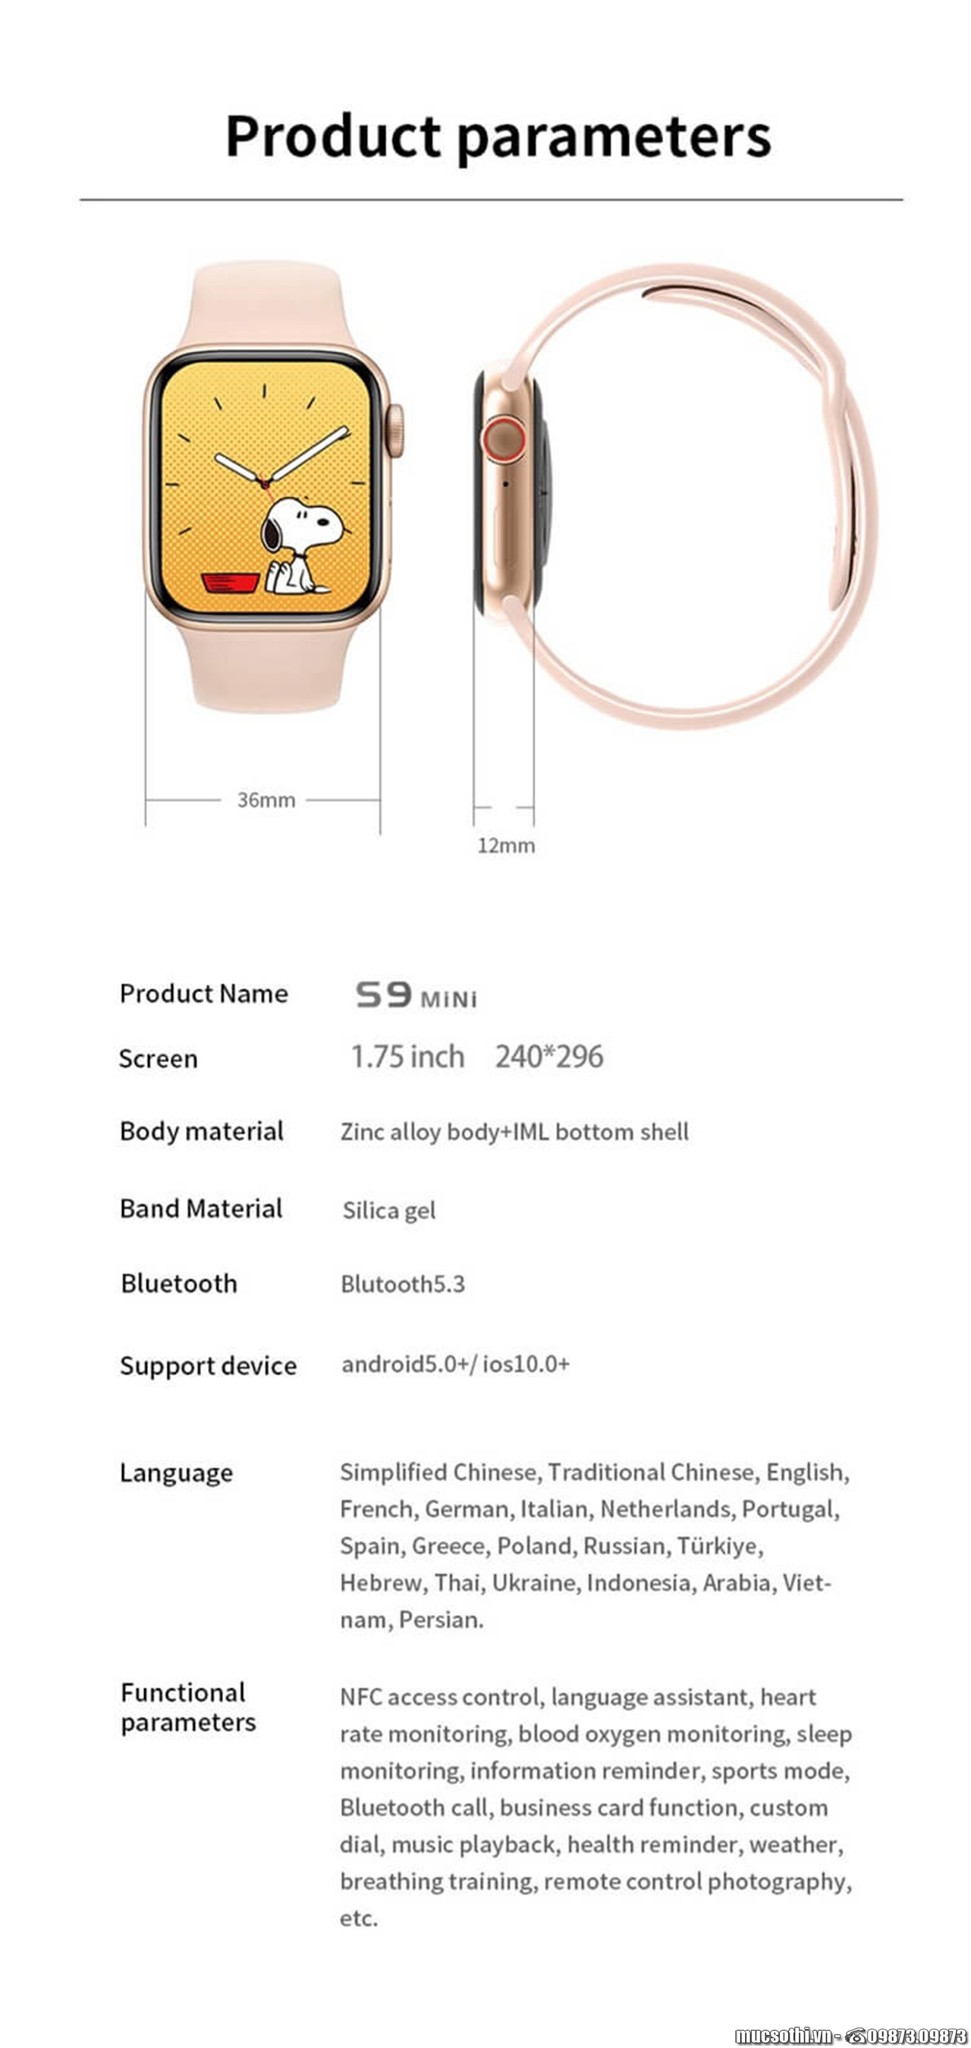 SmartphoneStore.vn - Bán lẻ giá sỉ, online giá tốt đồng hồ thông minh Smartwatch S9 MINI - 09873.09873